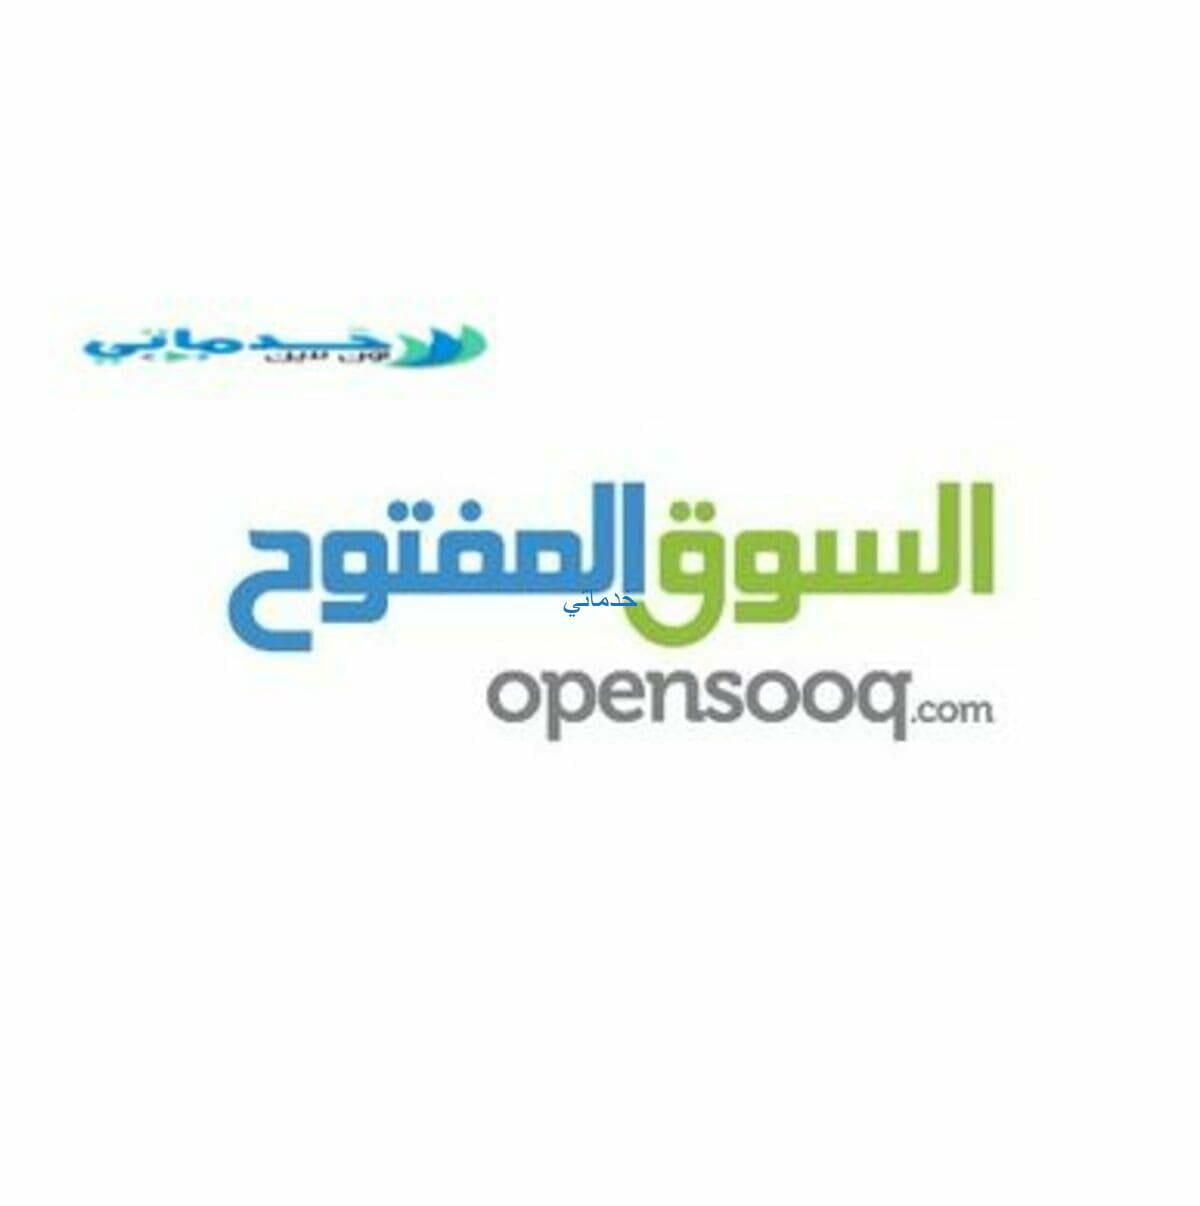 سوق ليبيا المفتوح رابط  opensooq